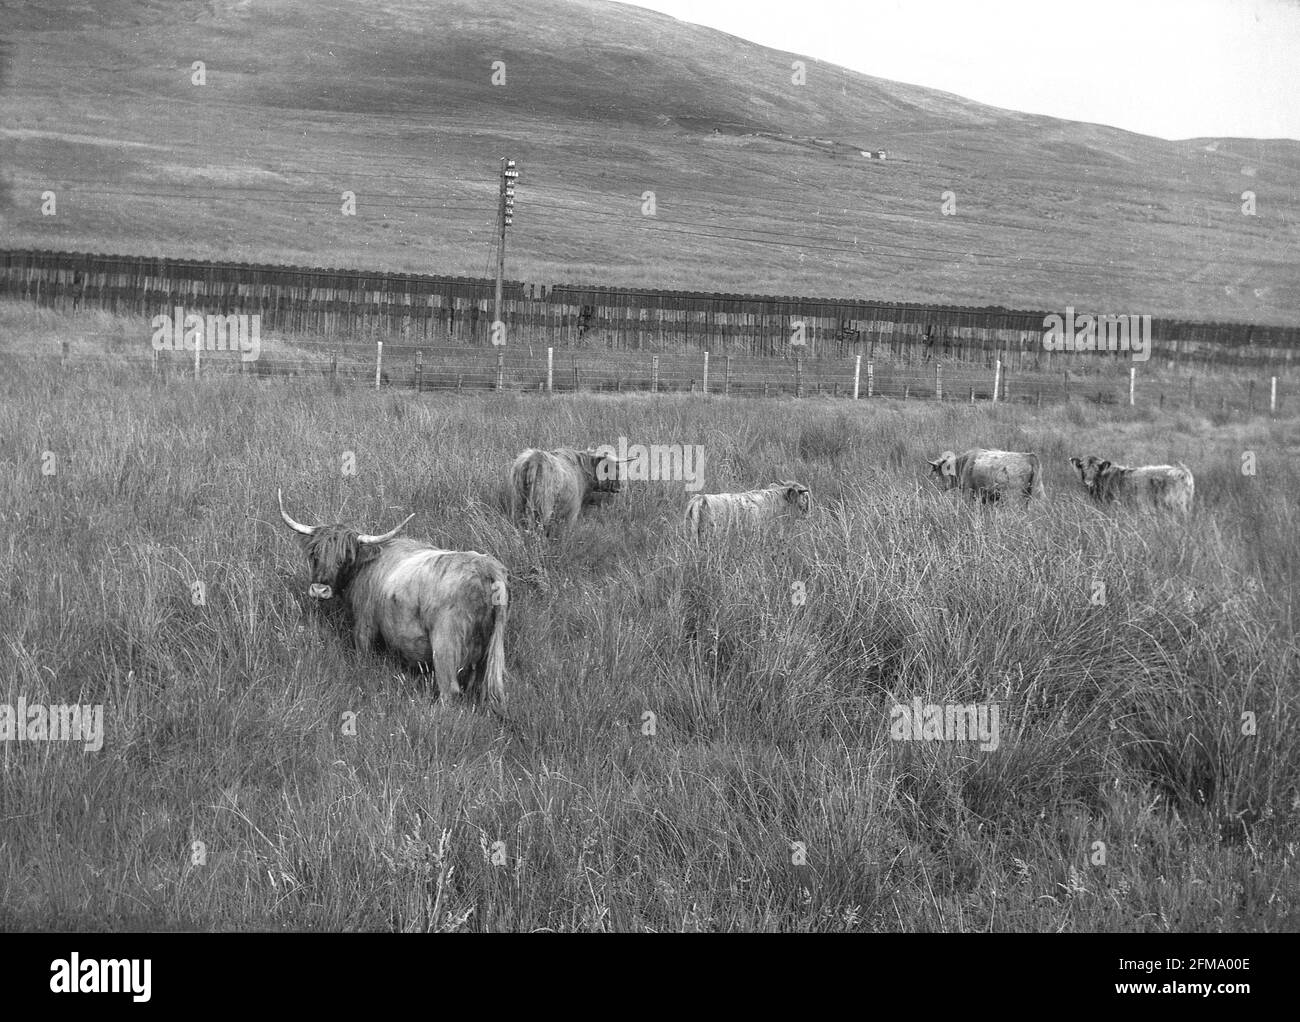 1956, historische Hochlandrinder auf einem Feld, mit langem Gras, die Highlands, Schottland, Großbritannien. Stockfoto